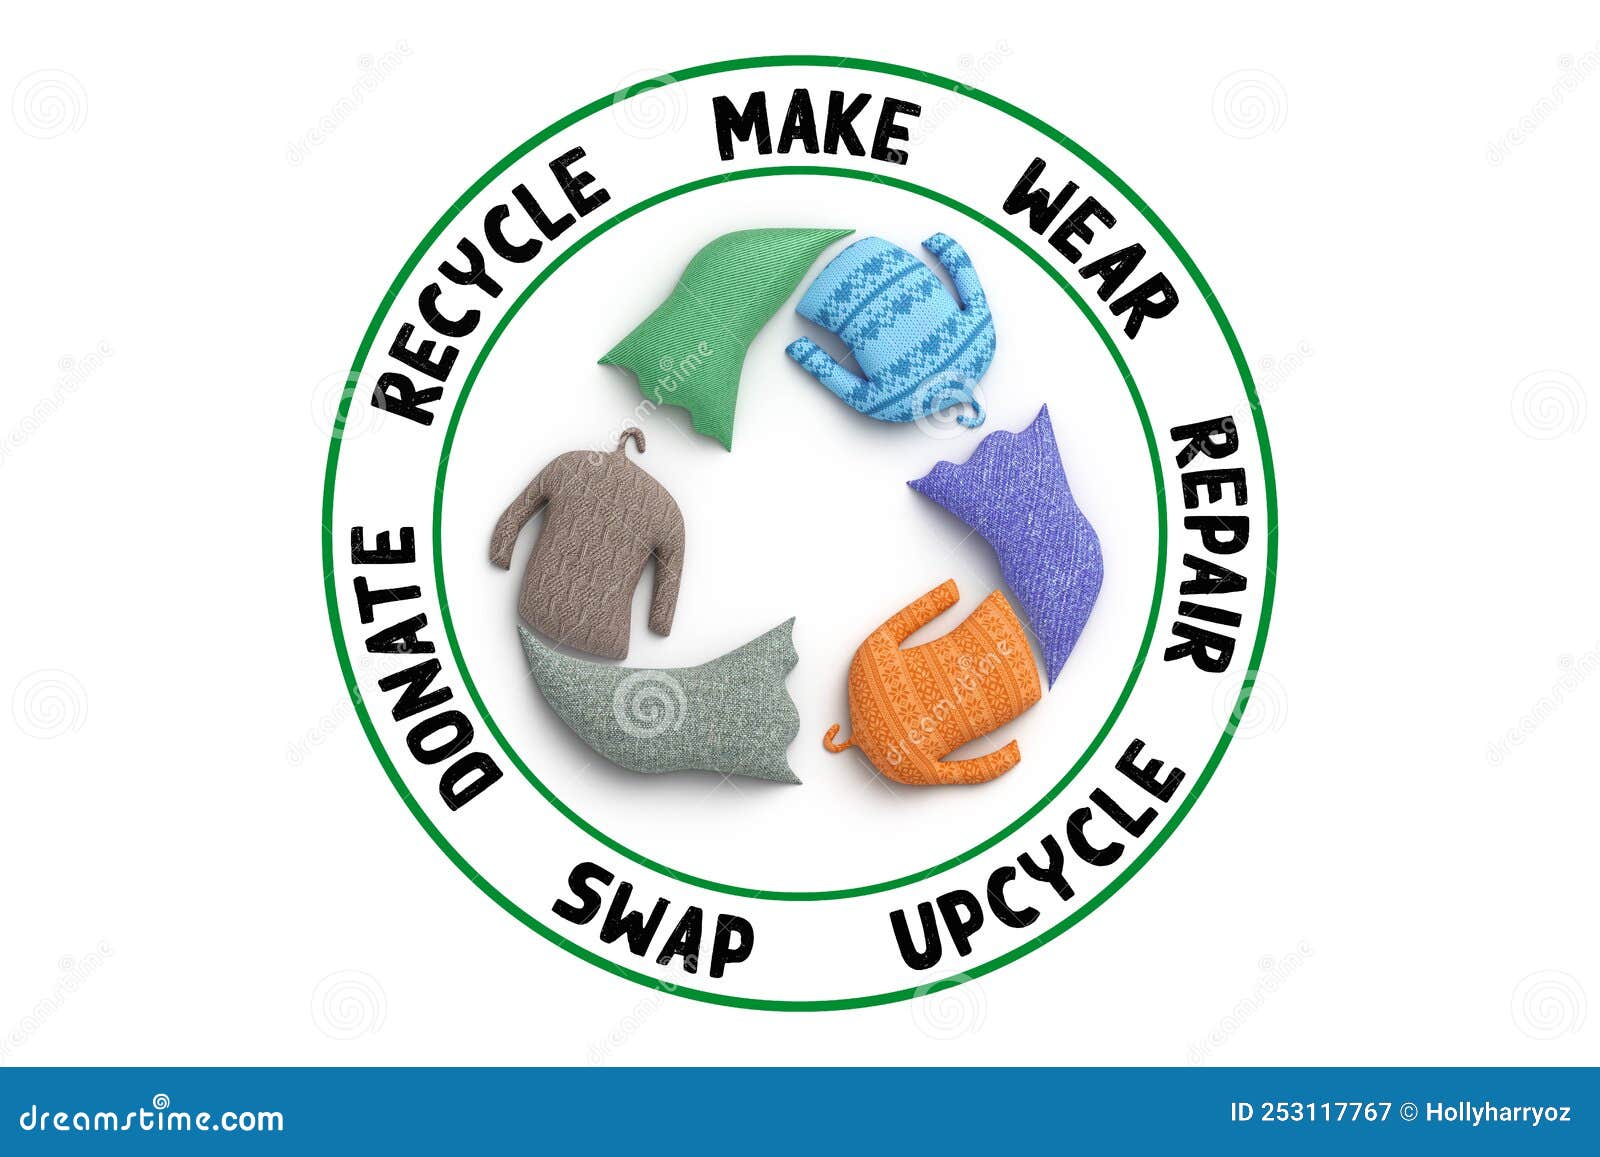 Reciclar Ropa Icono Parche En Jeans Moda Sostenible Visible Concepto De  Reparación Foto de archivo - Imagen de visible, manera: 219813694